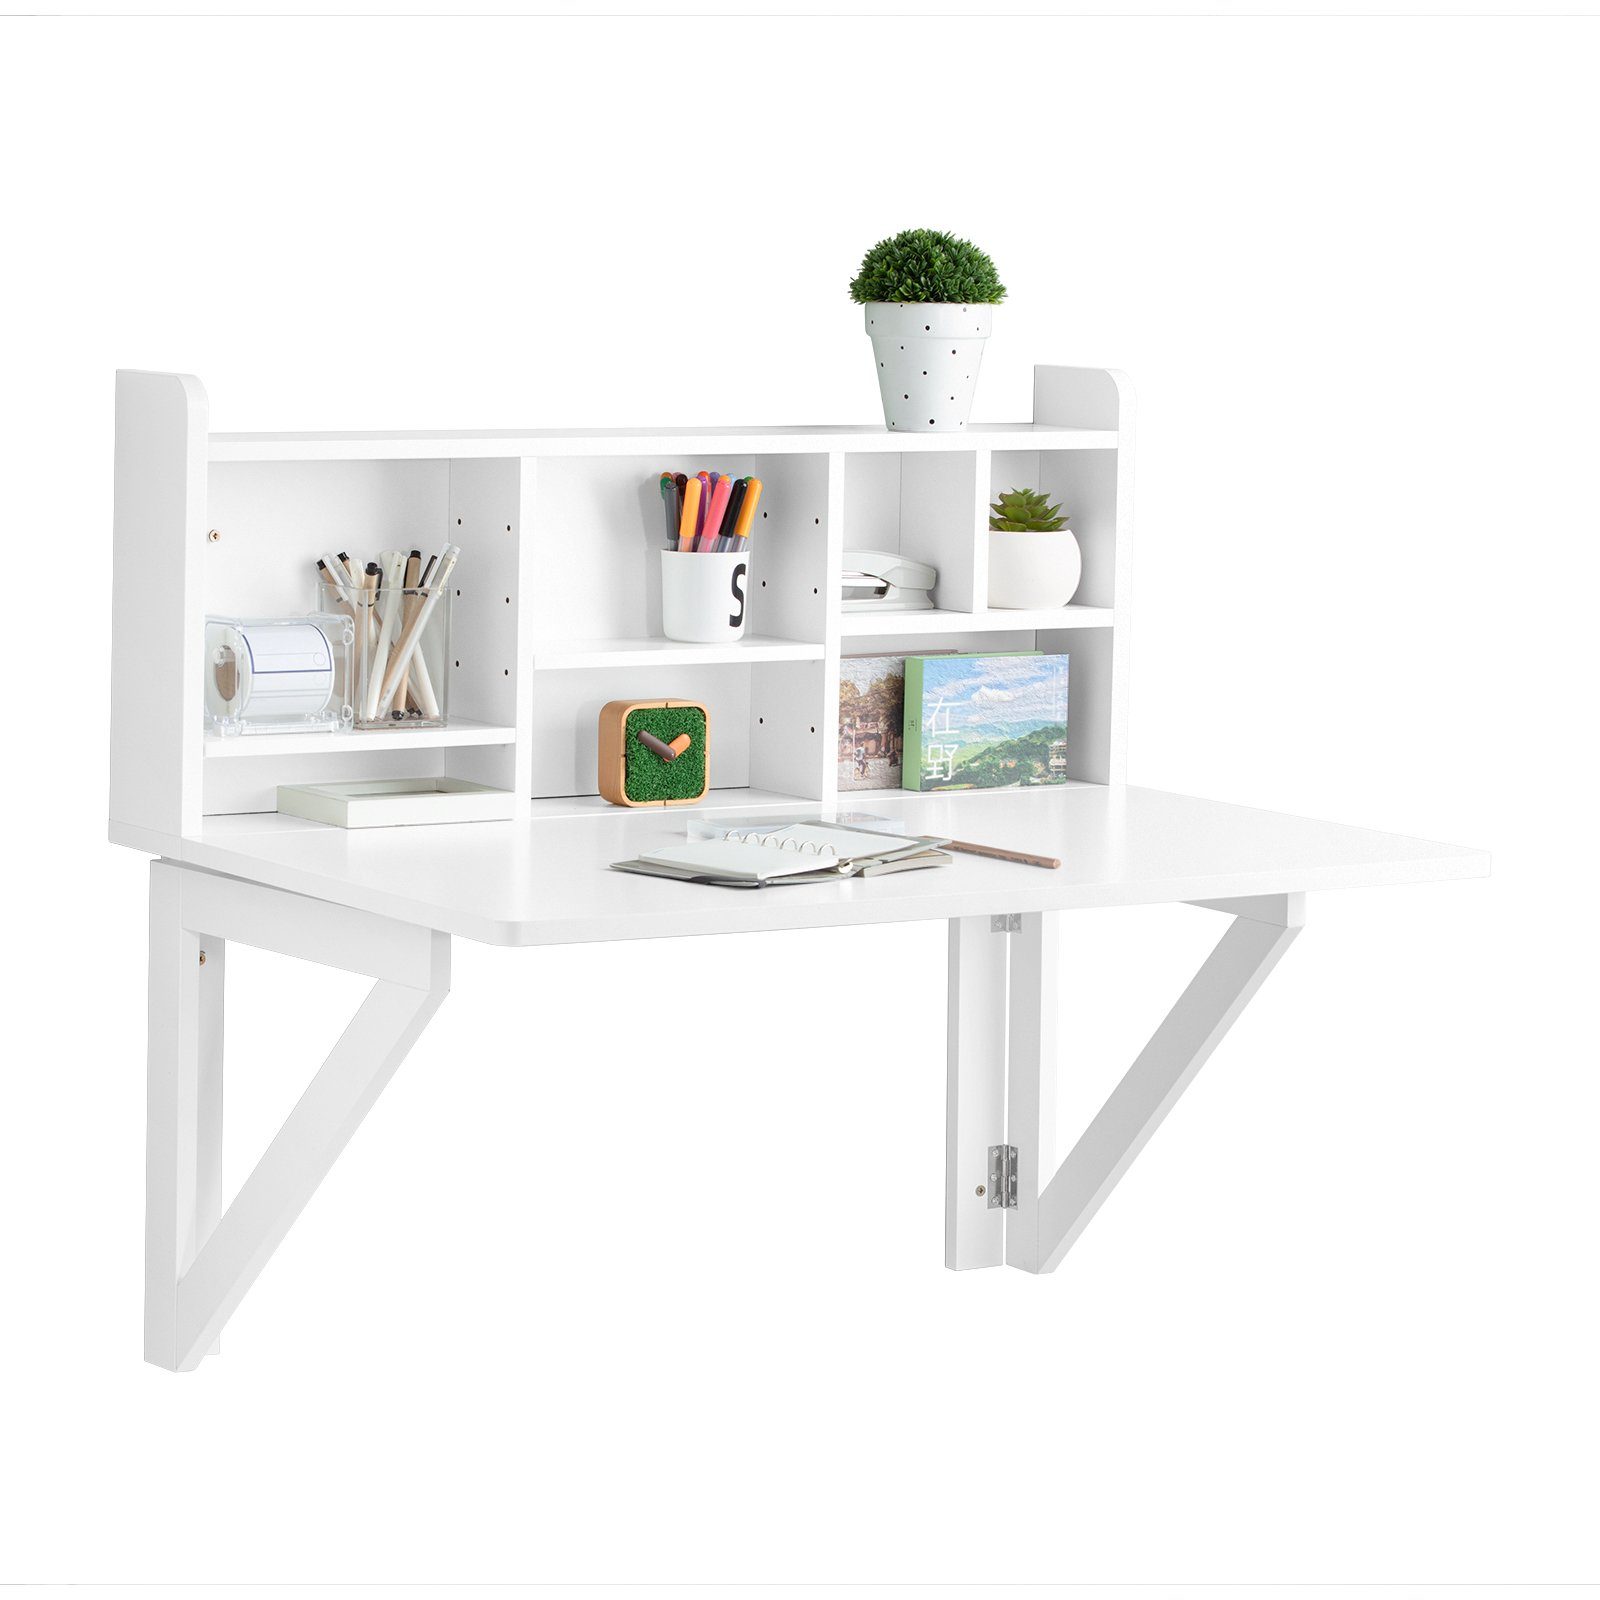 SoBuy Klapptisch FWT07, Wandklapptisch Schreibtisch Wandschrank Küchentisch Esstisch Weiß